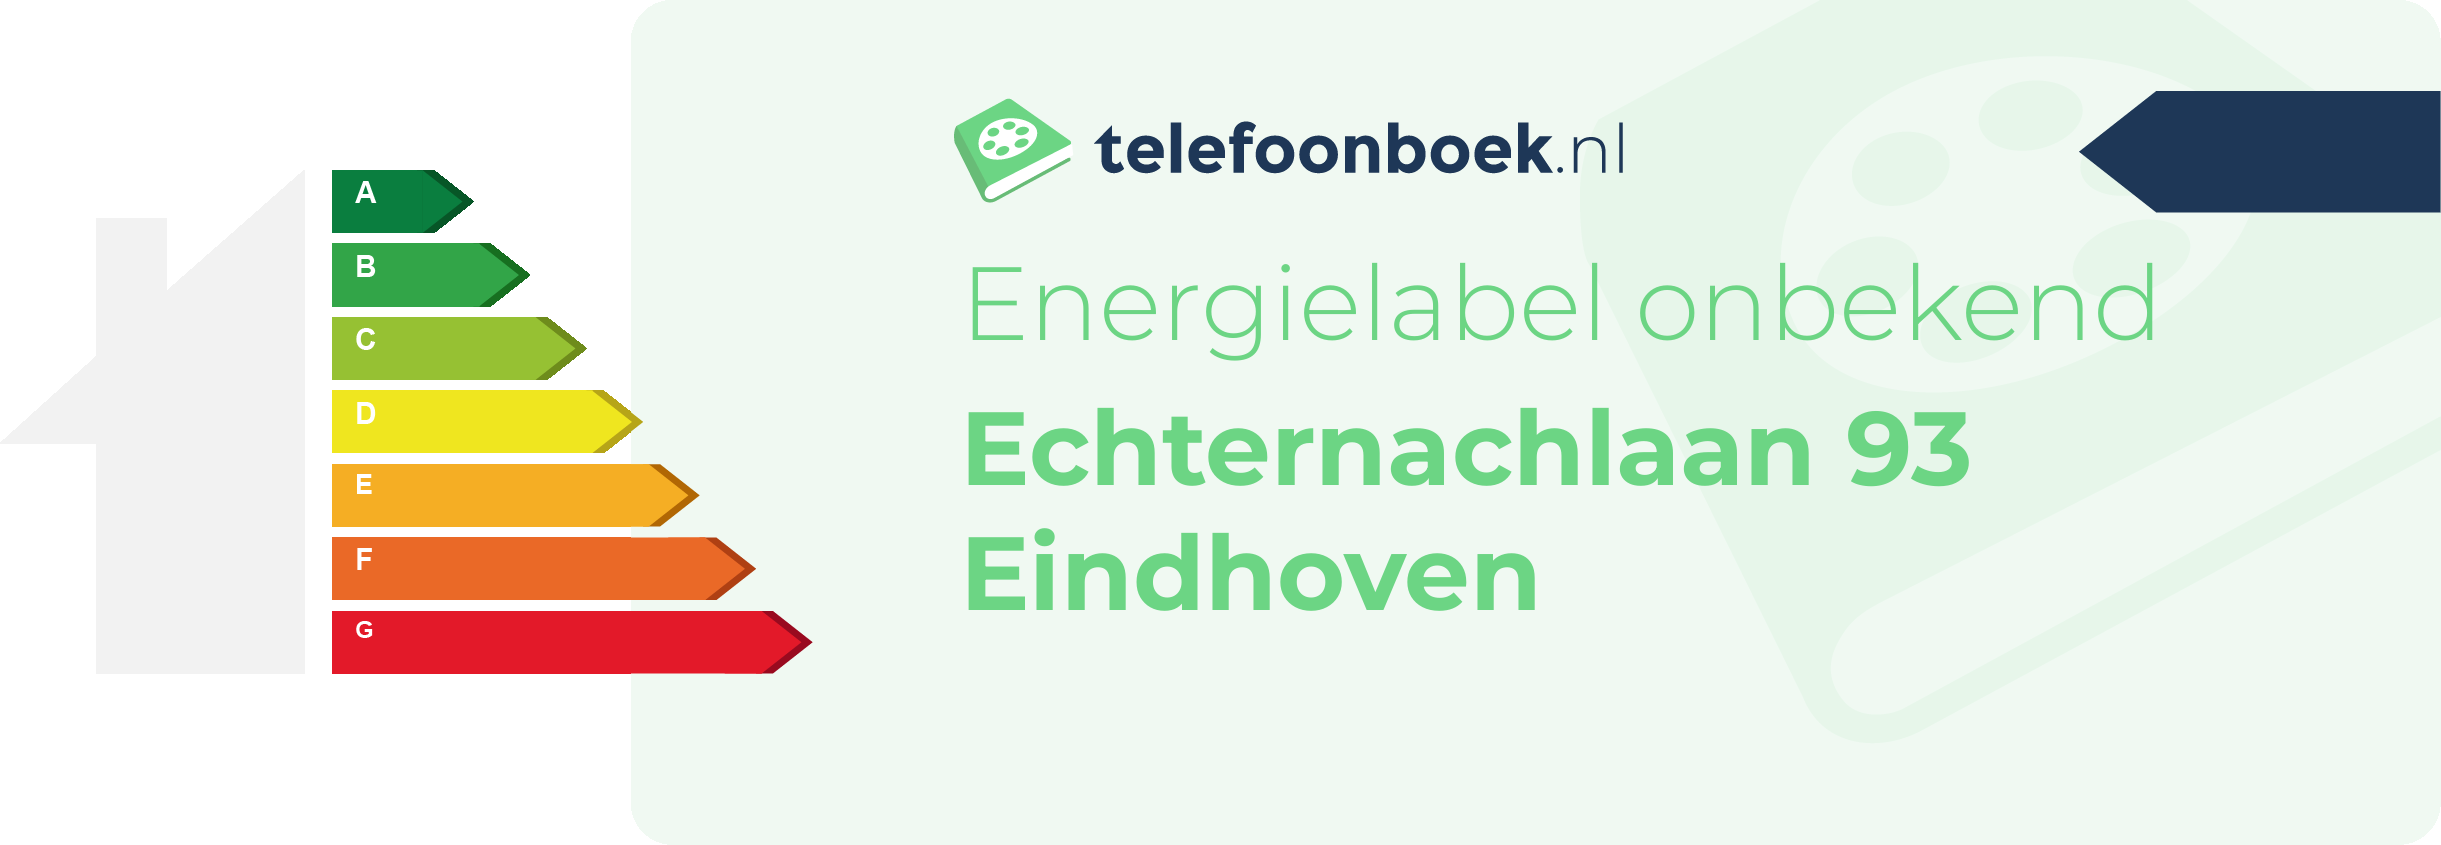 Energielabel Echternachlaan 93 Eindhoven